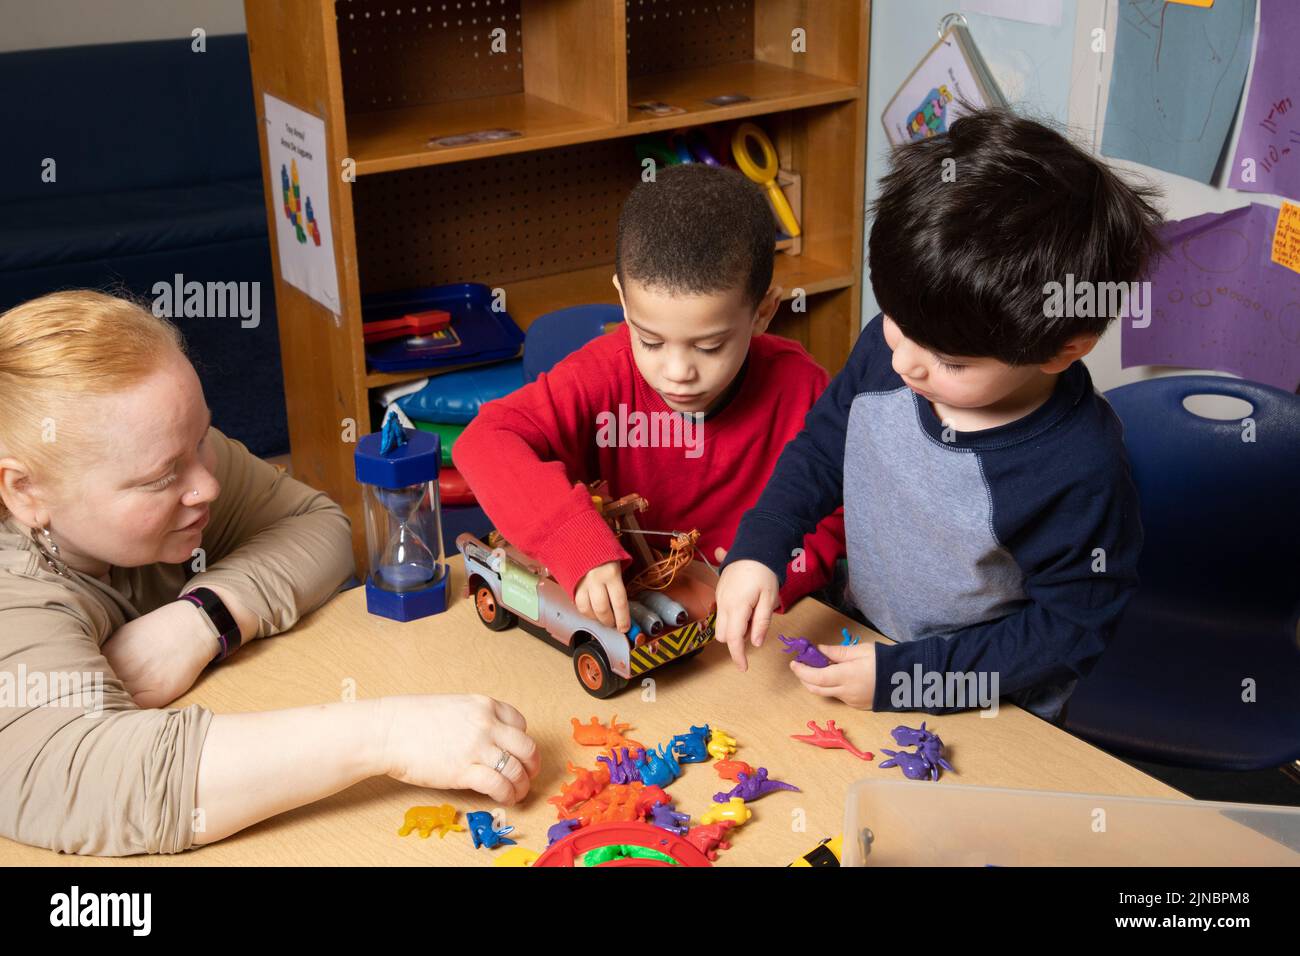 Educazione Preschool cura dei bambini 3 anni due ragazzi si scontrano con il giocattolo, insegnante che lavora con i bambini per risolvere il conflitto, ragazzi giocano insieme al giocattolo Foto Stock